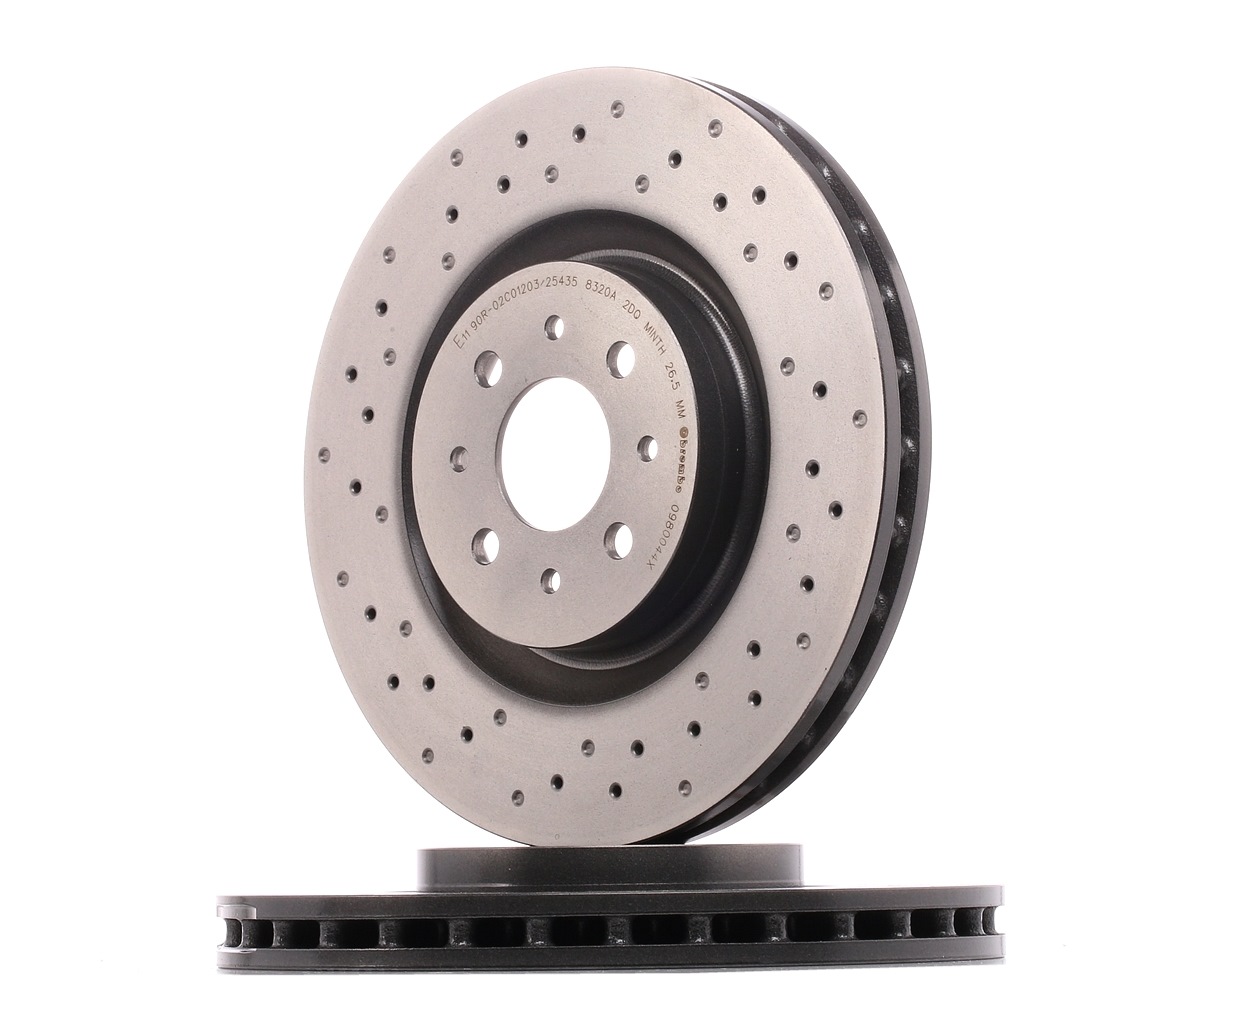 Image of BREMBO Brake disc ALFA ROMEO 09.8004.4X 51738833,51813785 Brake rotor,Brake discs,Brake rotors